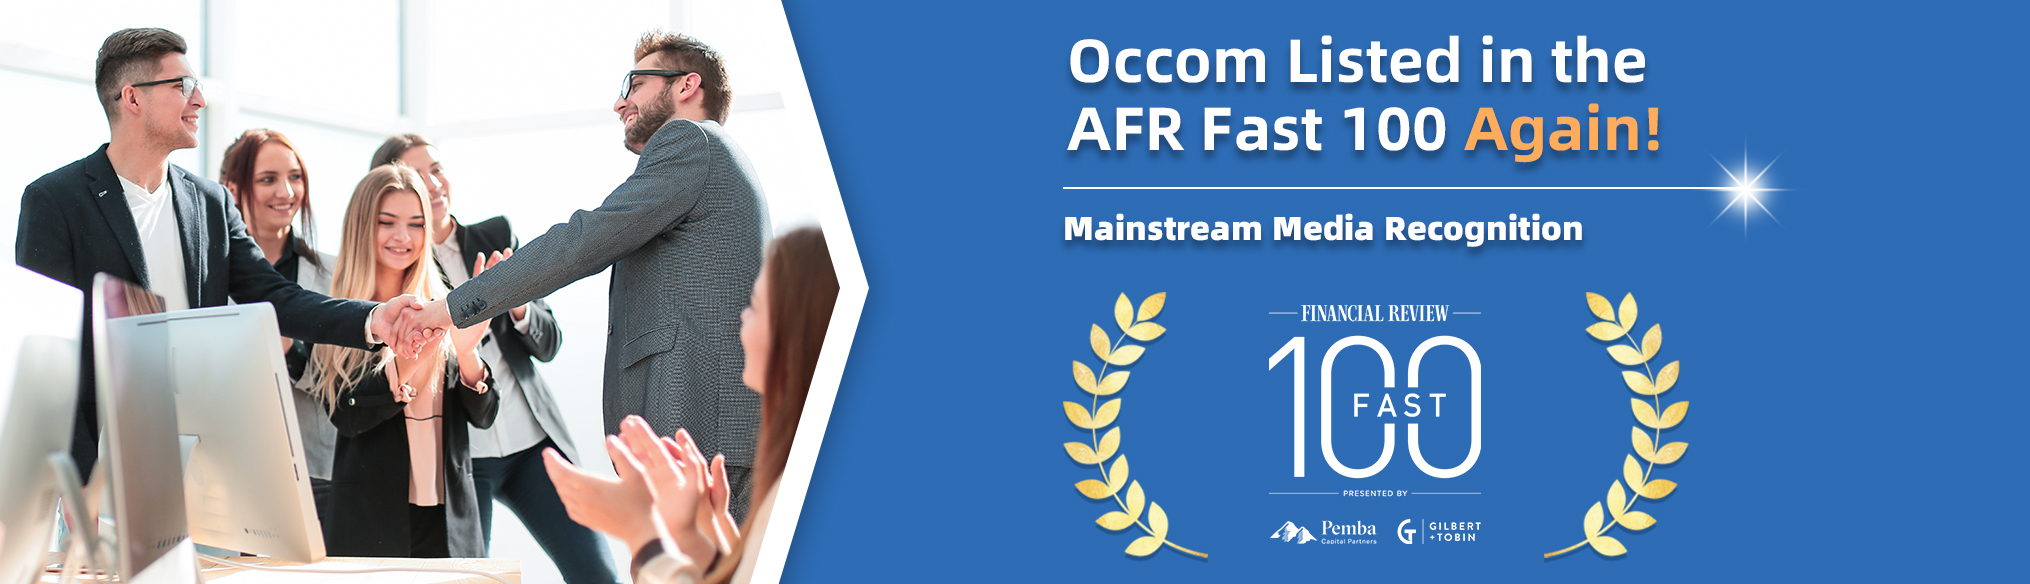 AFR Fast 100 Occom